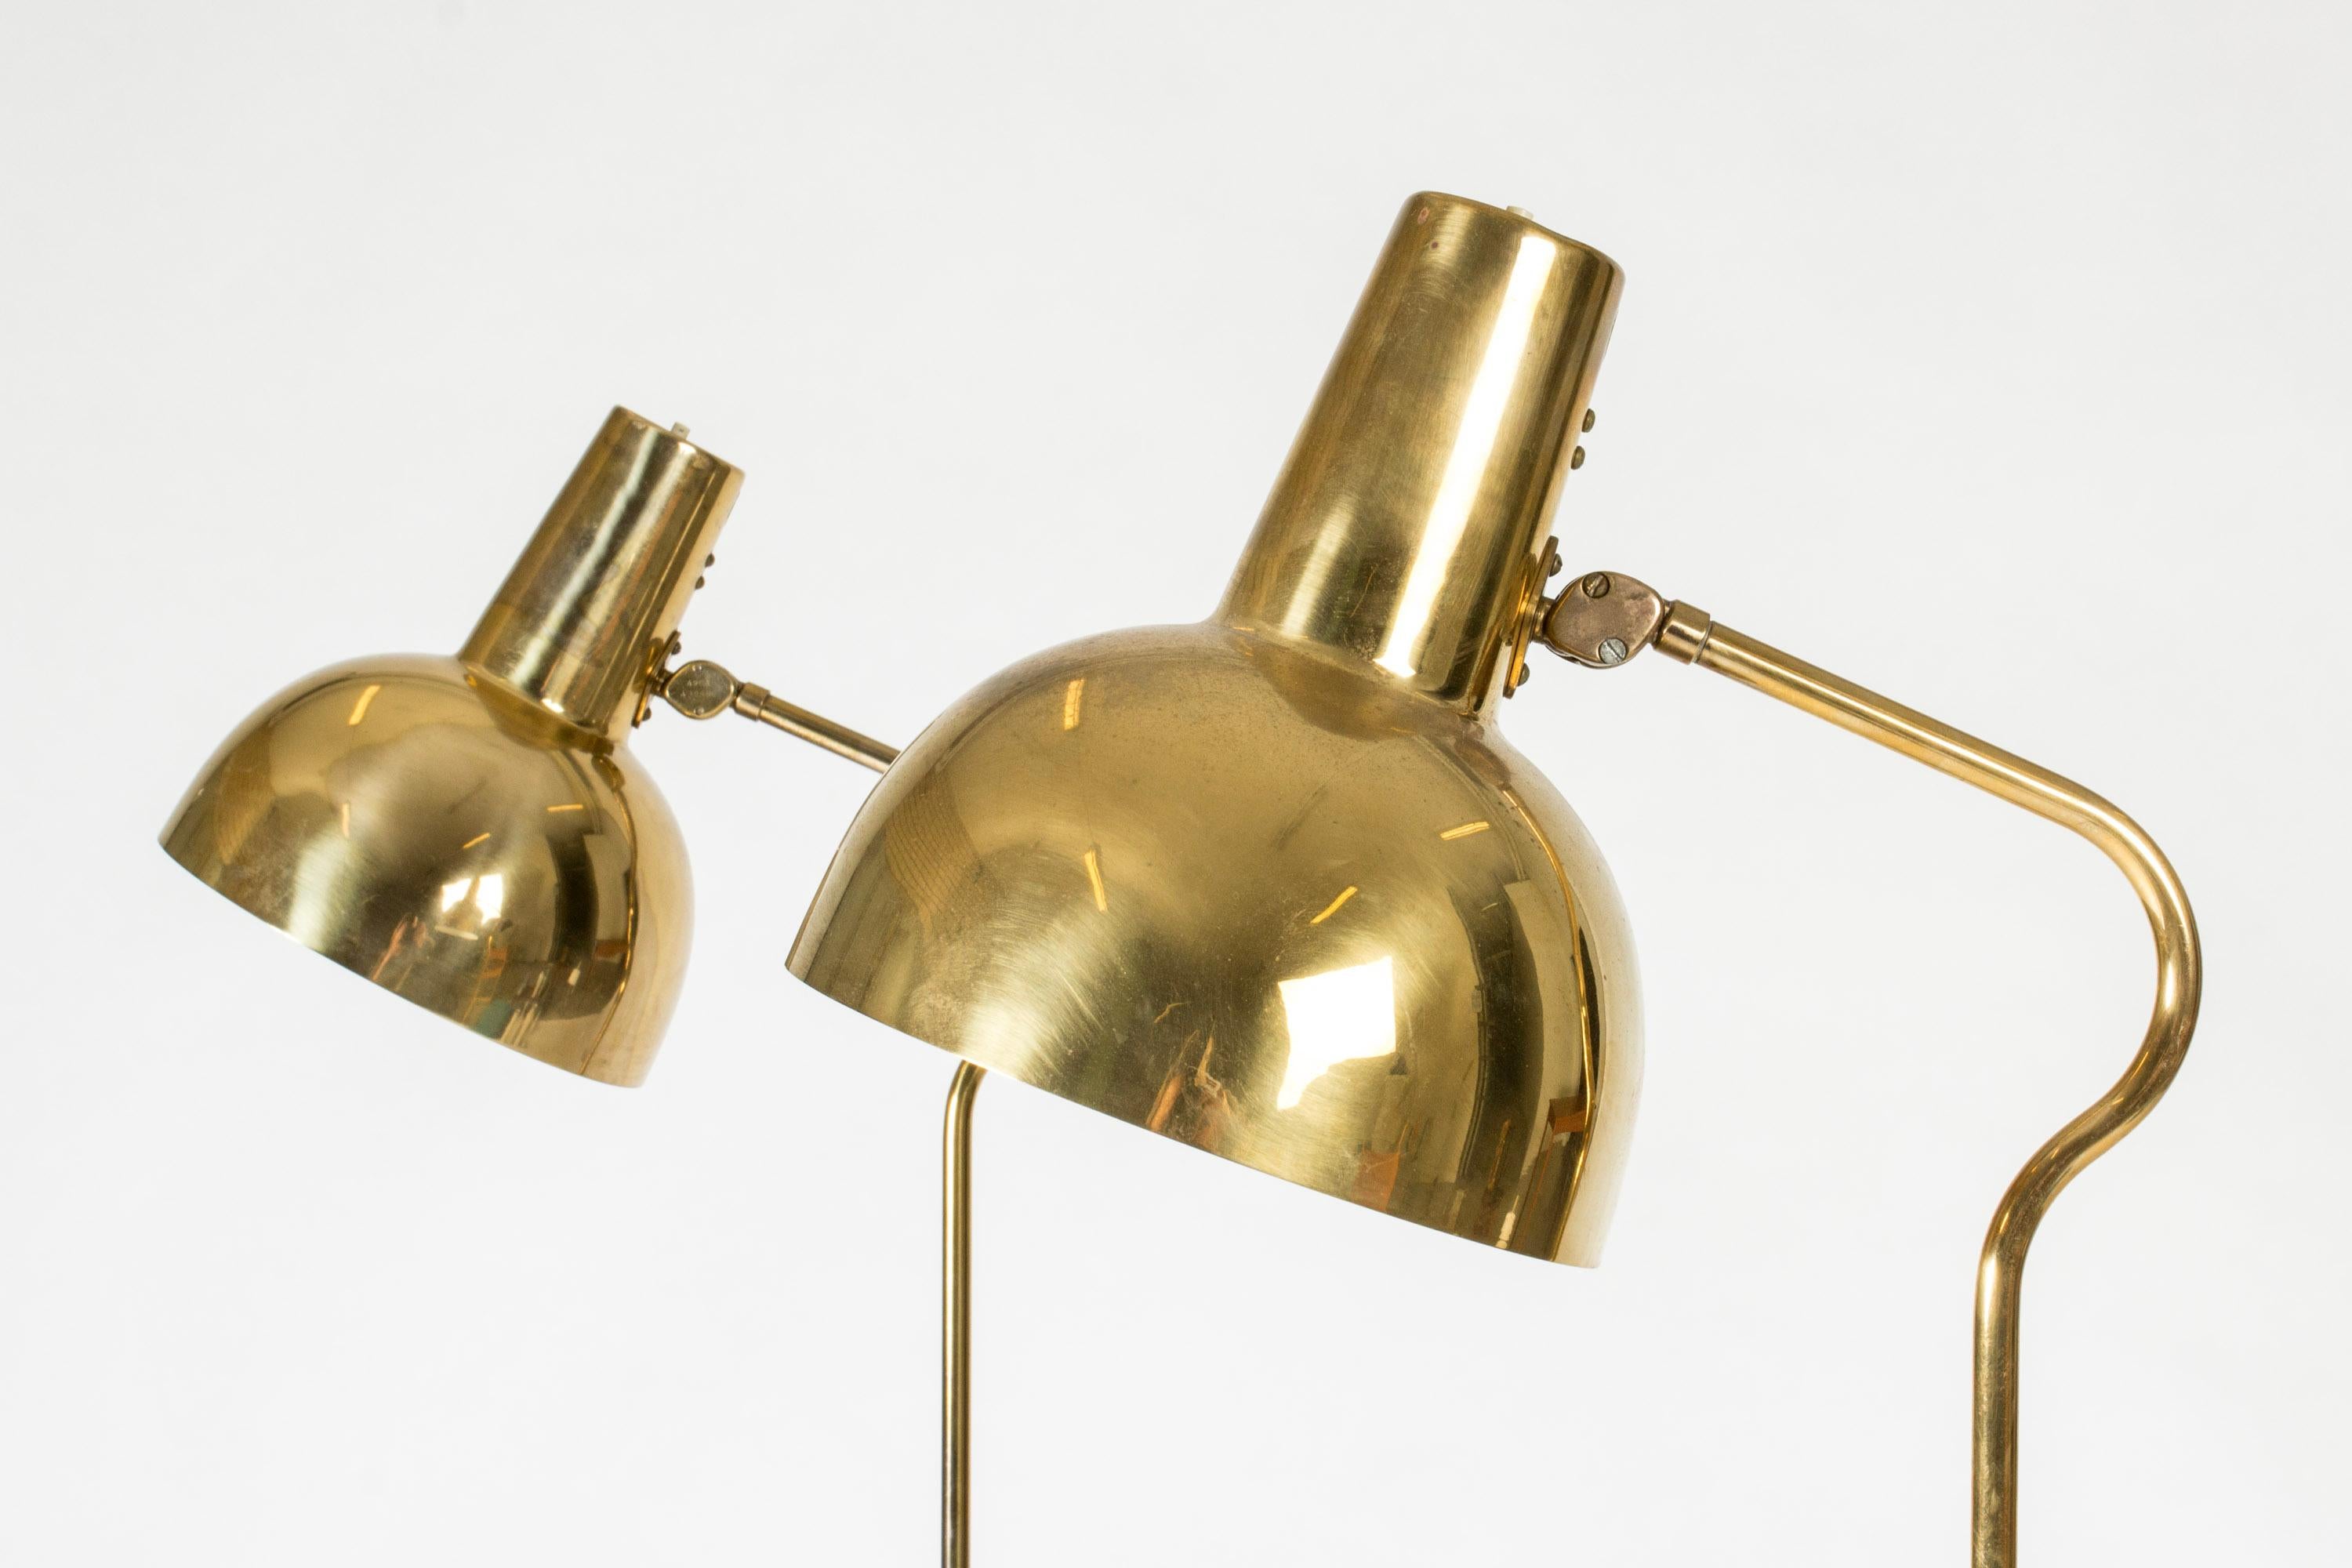 Mid-20th Century Vintage Scandinavian Modern Brass Floor Lamps, ASEA, Sweden, 1950s For Sale